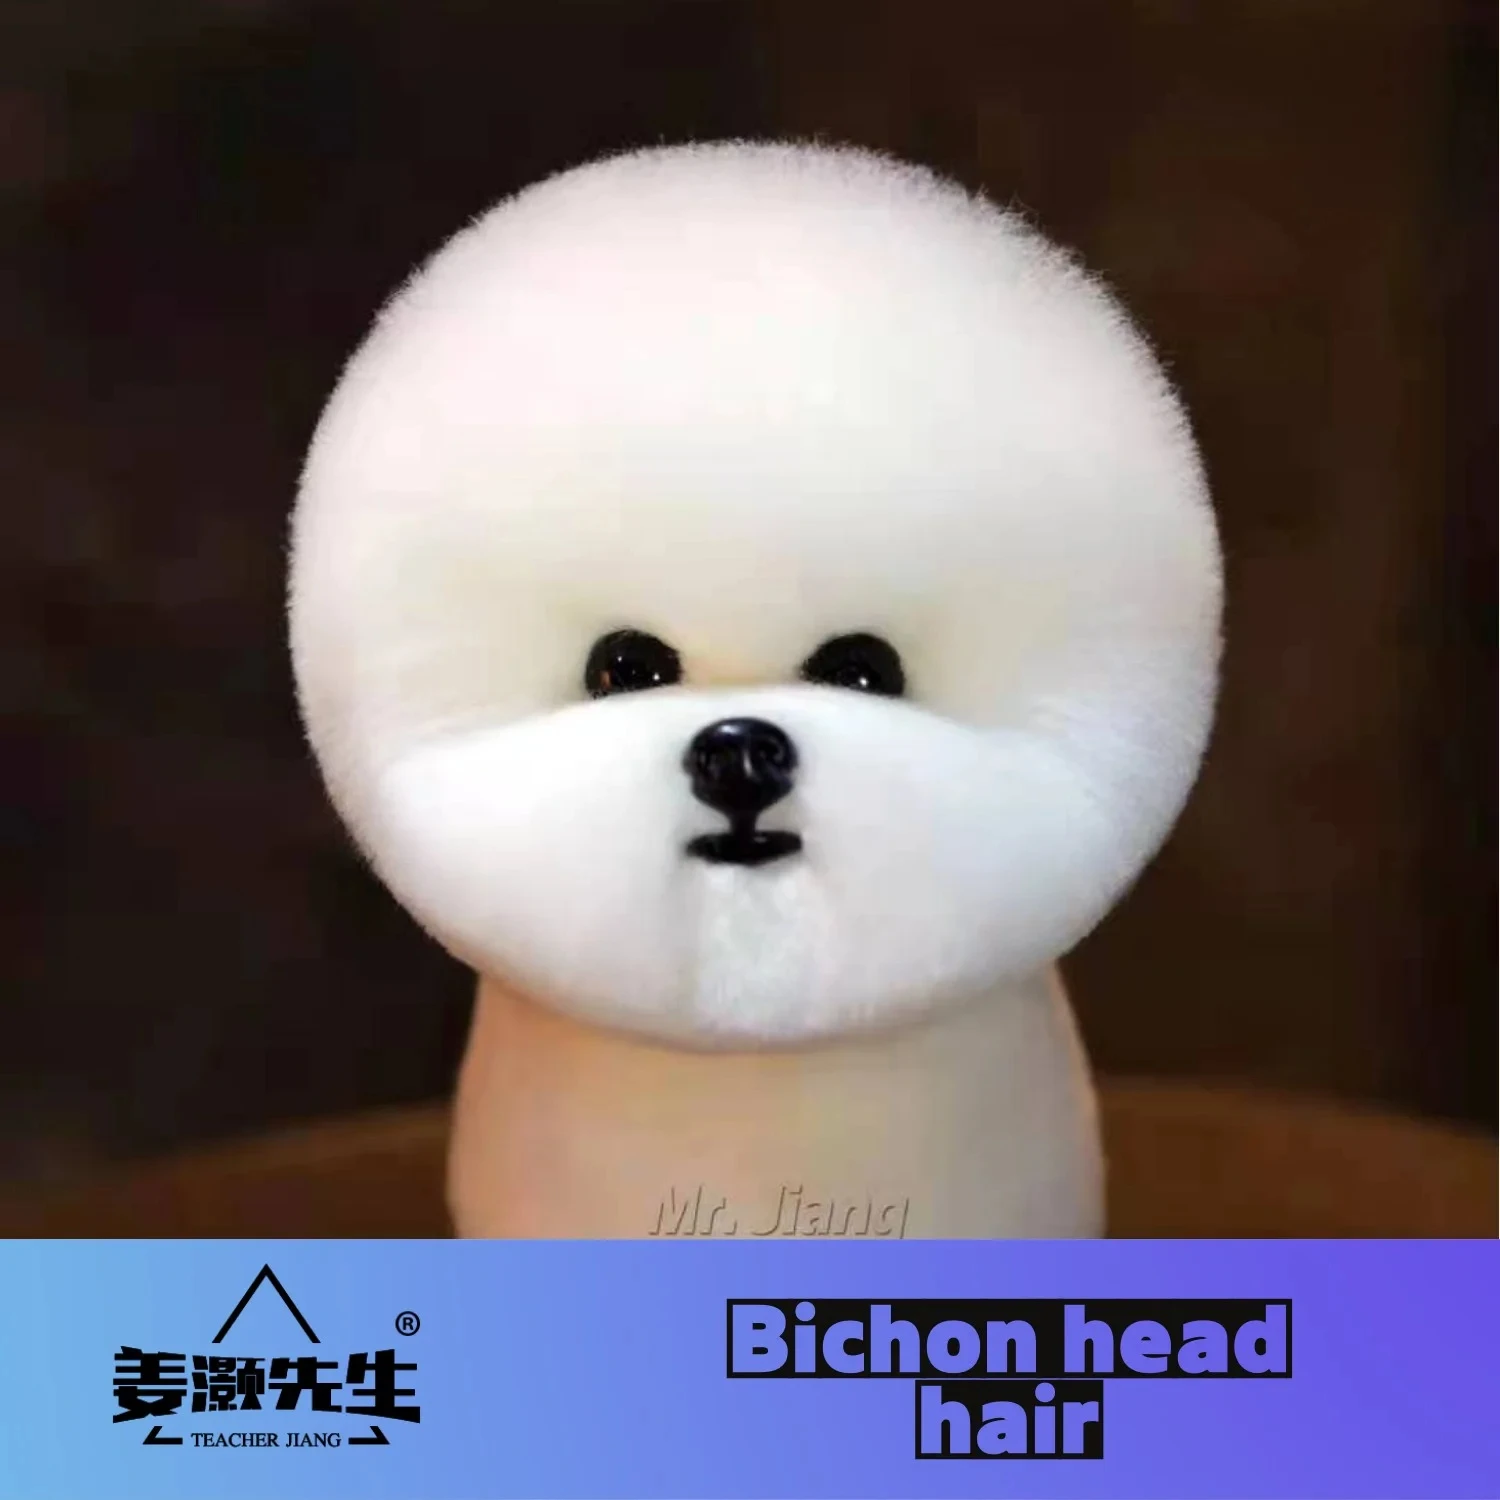 

Mr. Jiang Standard Bichon модель собаки, искусственные волосы для учителей или всего тела, для ухода за питомцами (без манекена